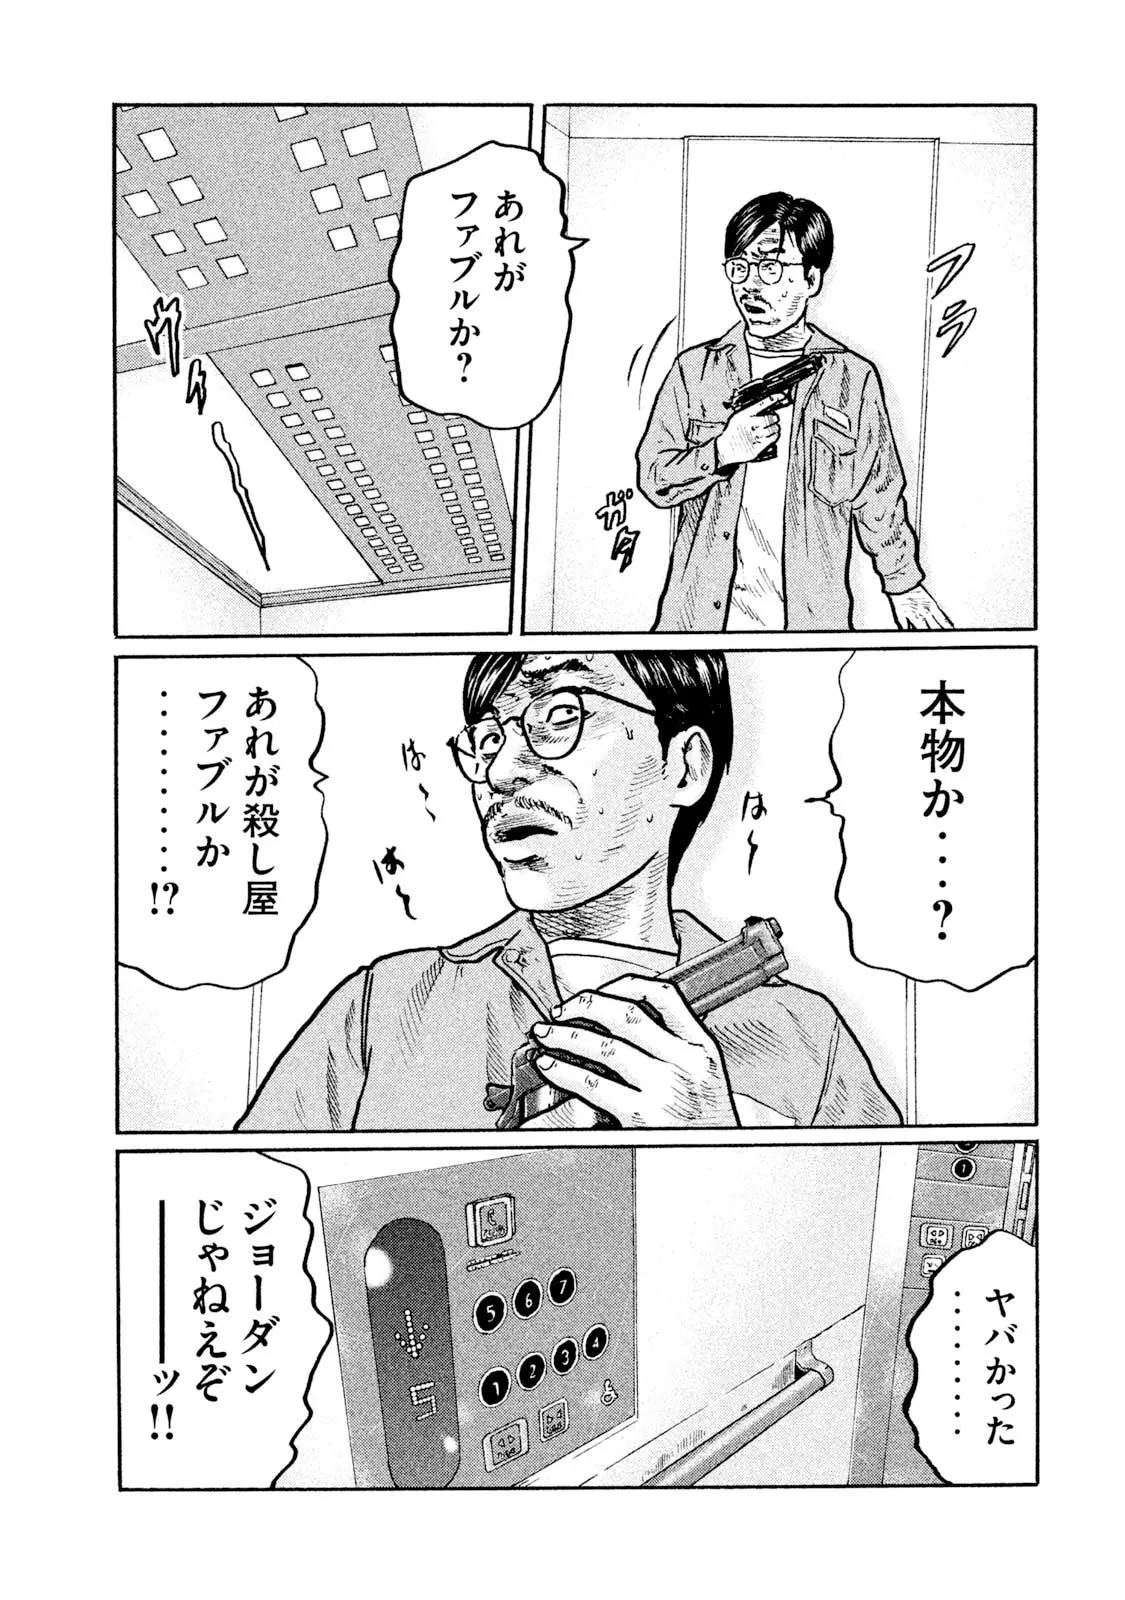 ザ・ファブル 原作コミック 13ページ目